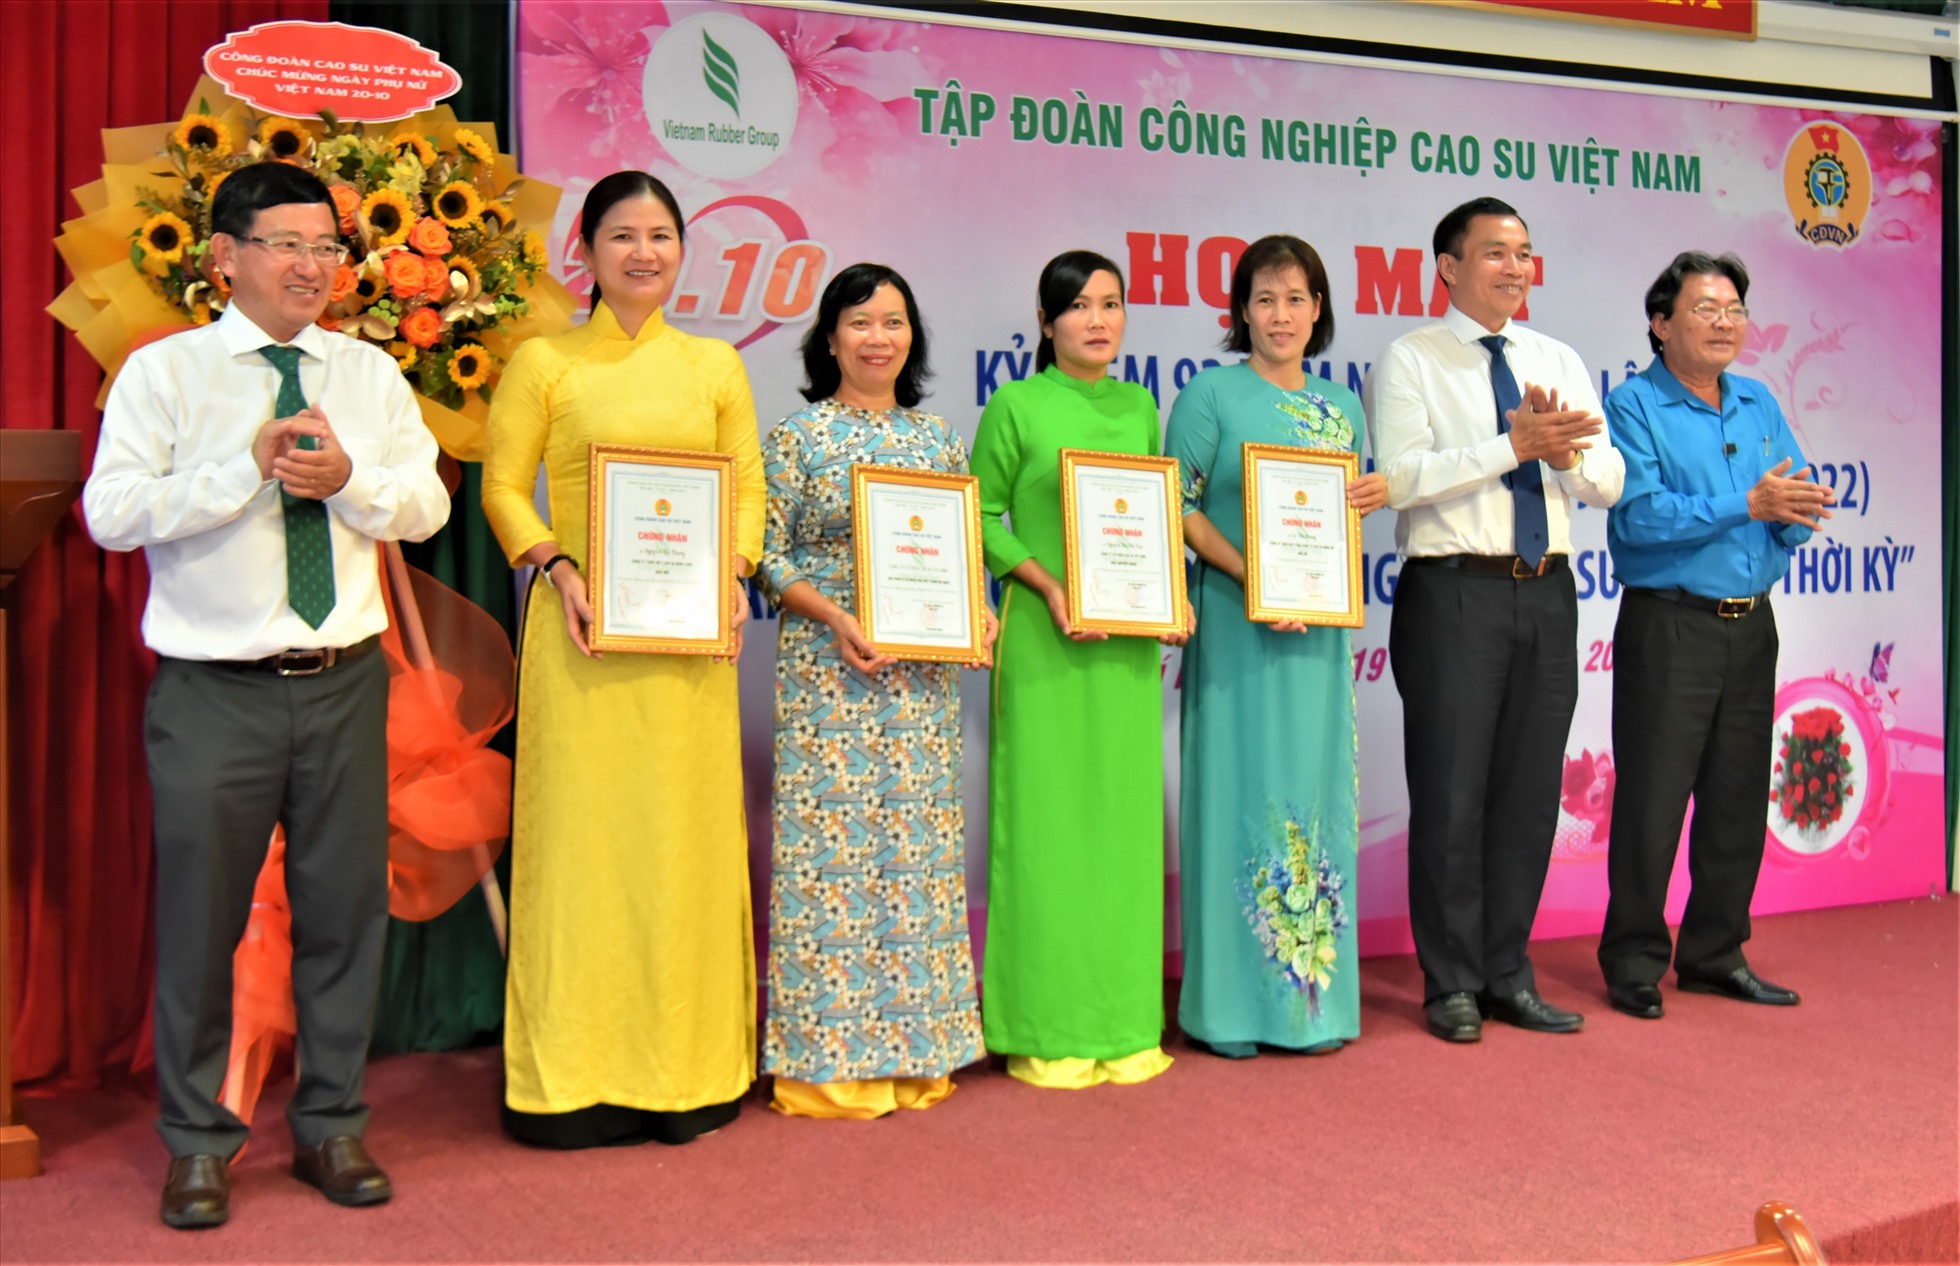 Lãnh đão Tập đoàn Công nghiệp Caosu Việt Nam và Công đoàn Caosu Việt Nam trao giải cho các tác giả đoạt giải cuộc thi viết “Gương sáng phụ nữ ngành caosu Việt Nam“. Ảnh: Nam Dương